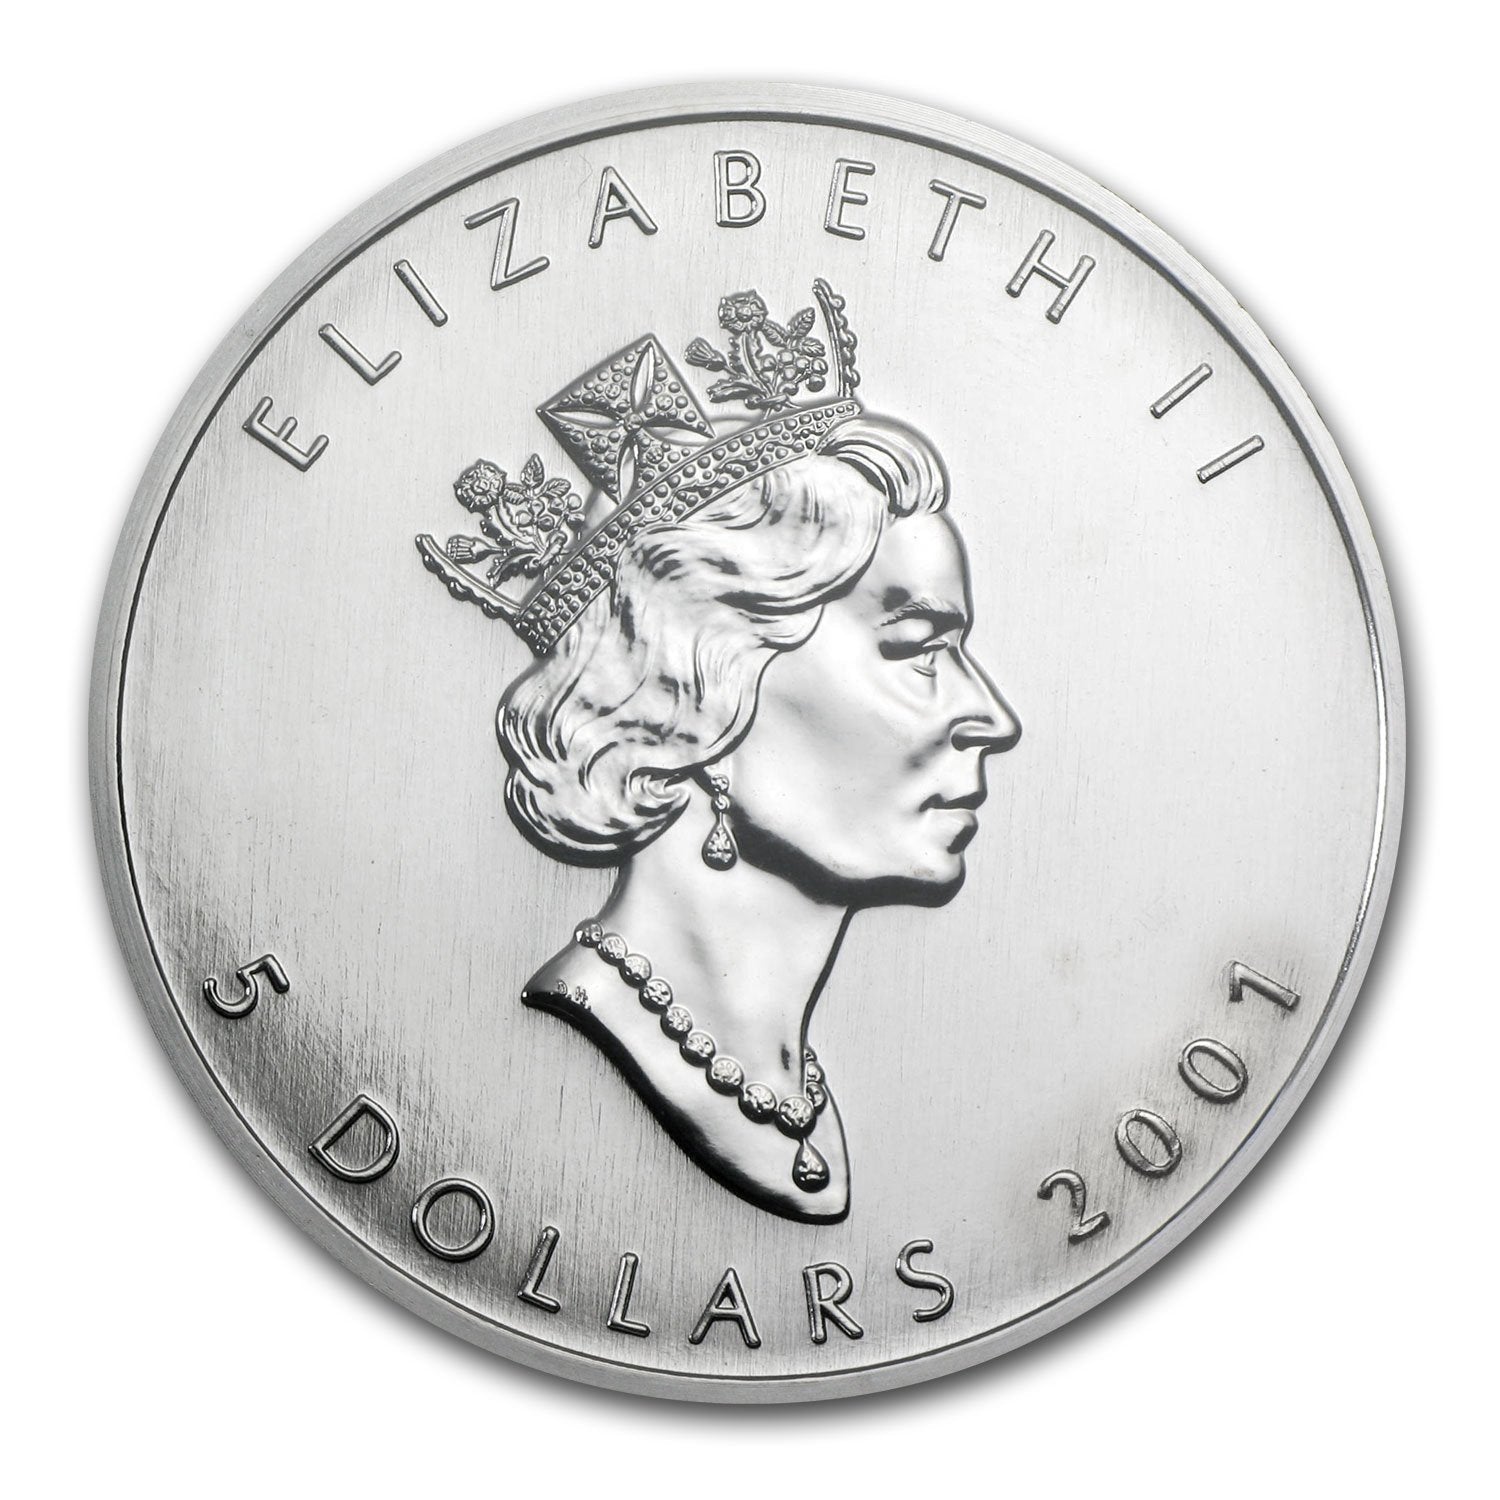 Moneta argento fior di conio 1oz Canada 5 dollars Maple Leaf 2001 - Gioielleria Capodagli